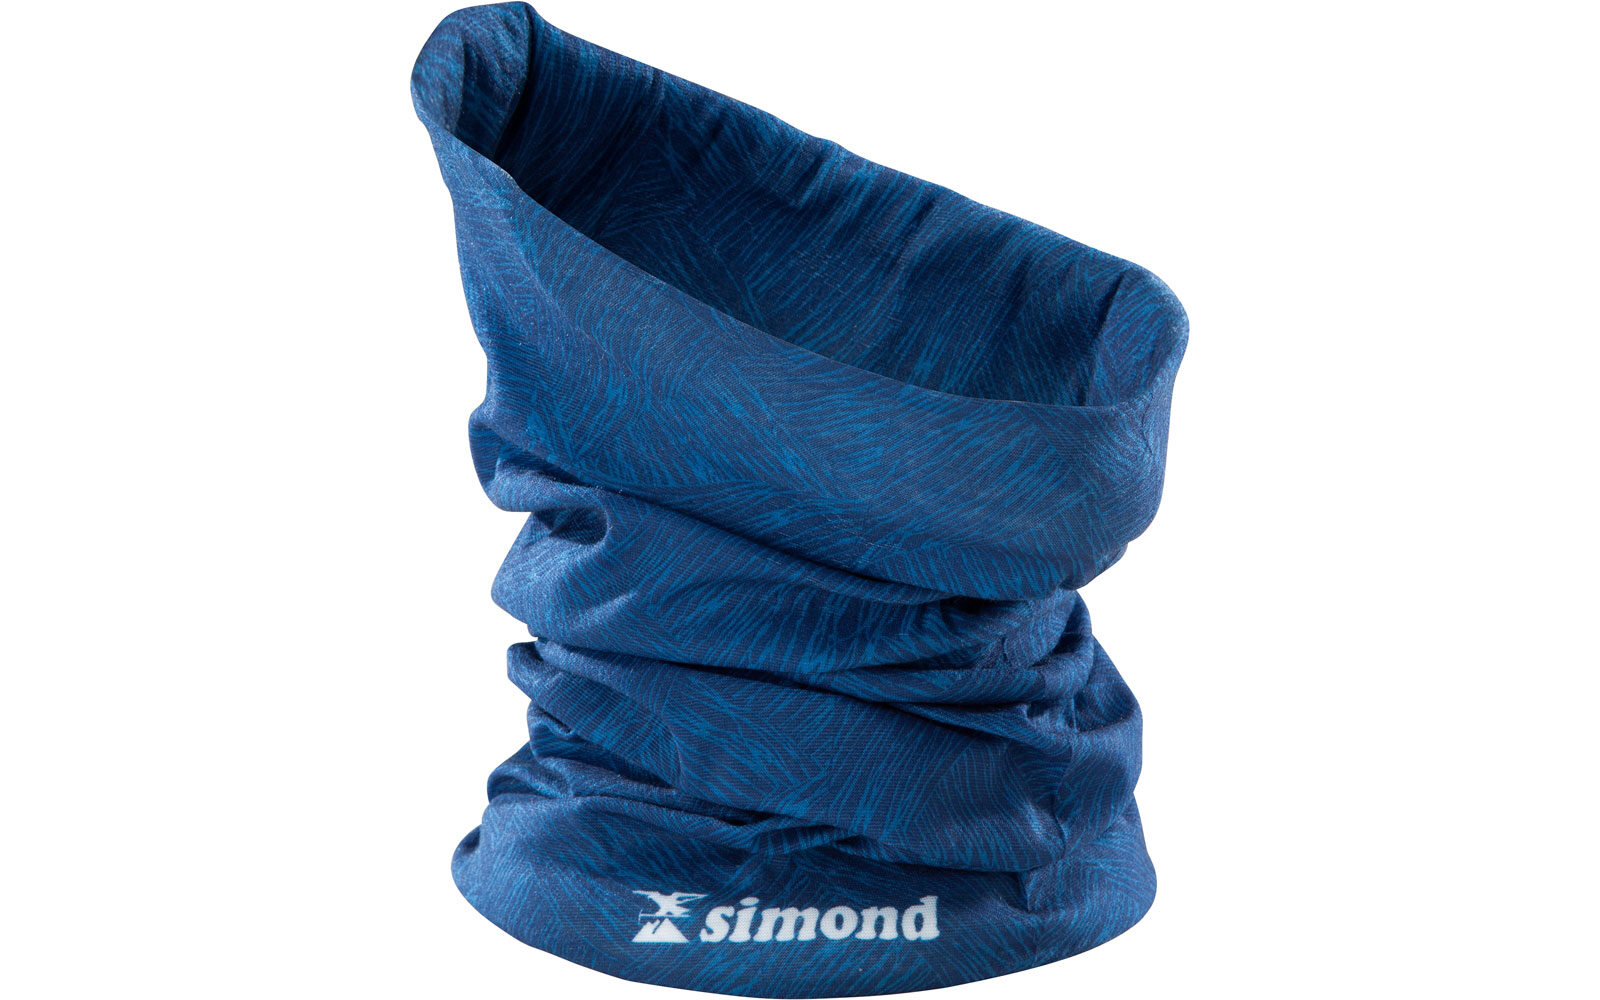 Simond by Decathlon Alpinism, girocollo multifunzione (fascia, sciarpa, berretto, passamontagna) contro le intemperie, leggero e traspirante, tessuto a rapida asciugatura. Euro 3,99